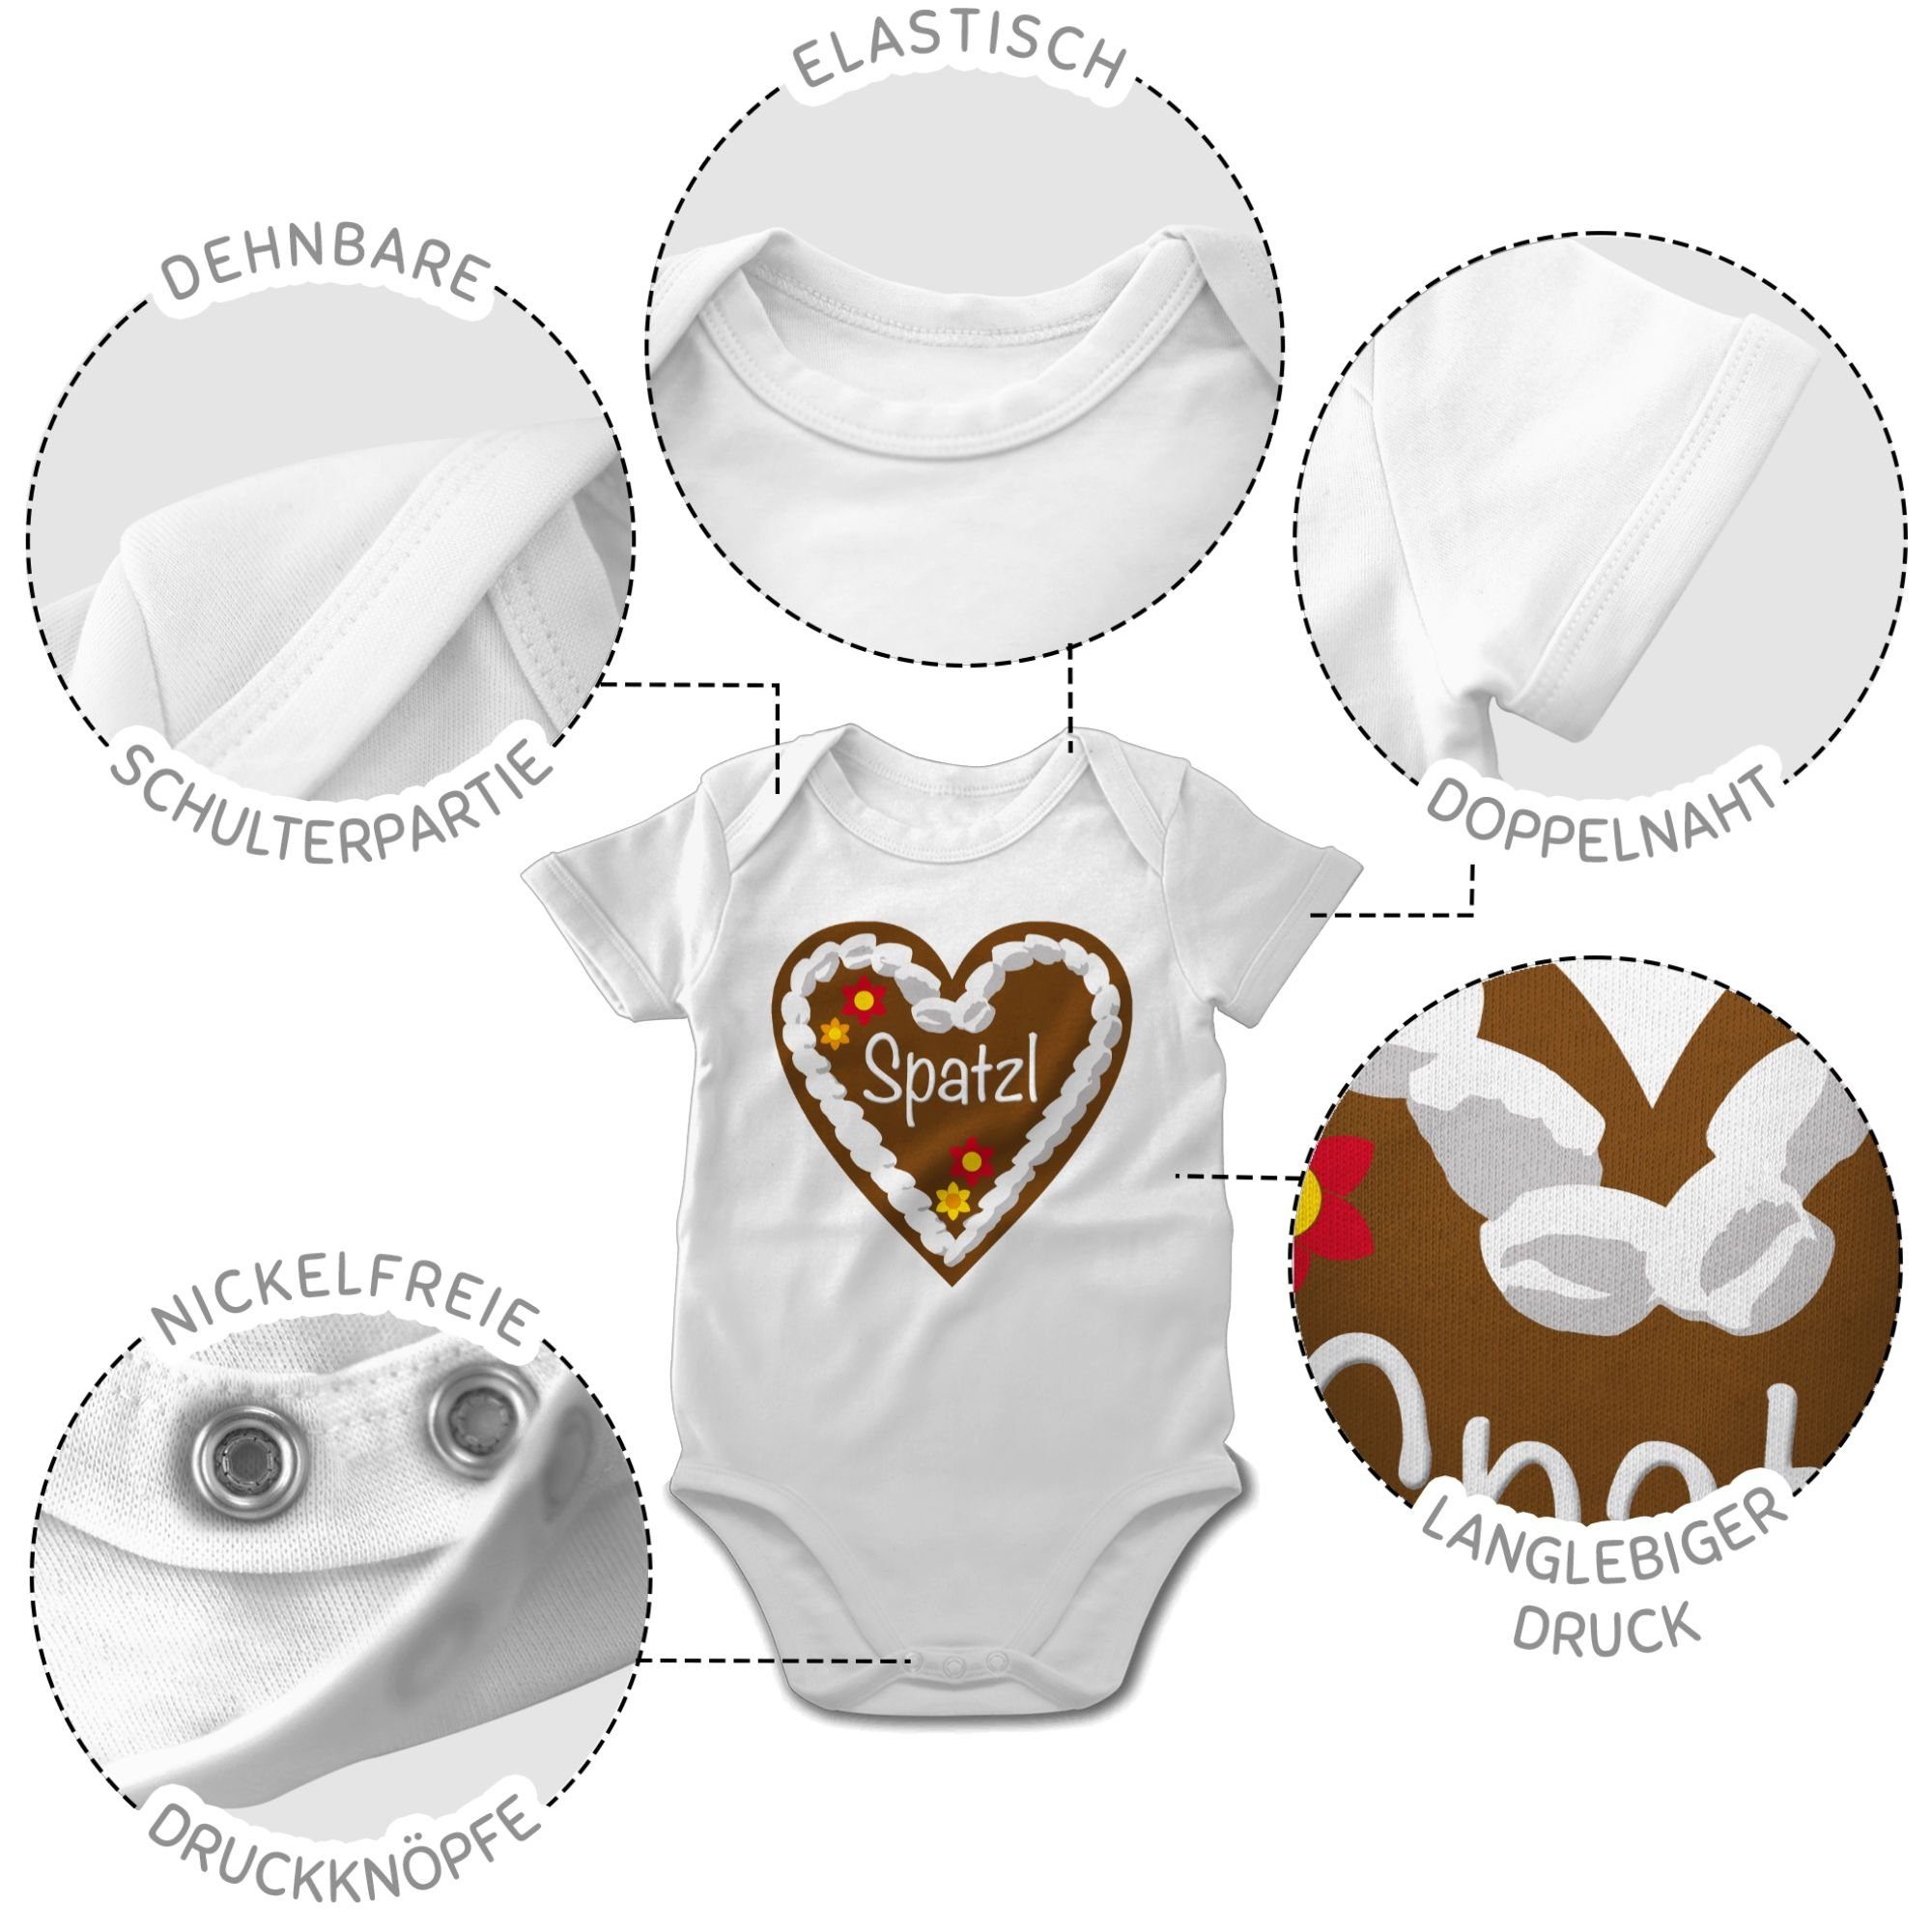 Spatzl 2 Weiß Baby Mode Outfit für Oktoberfest Shirtracer Lebkuchenherz Shirtbody